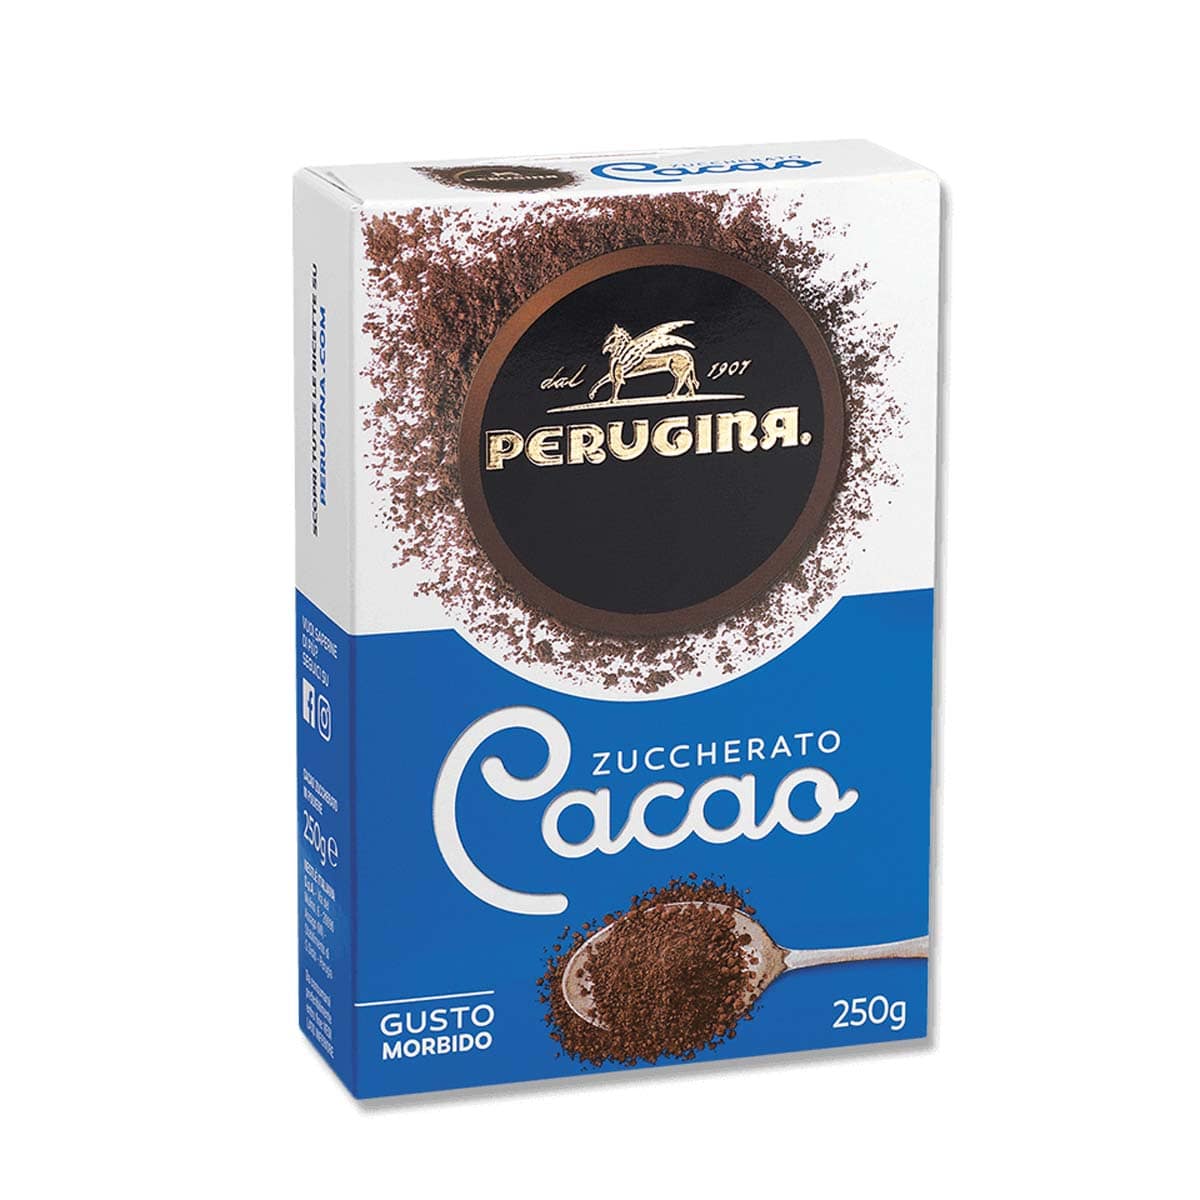 Perugina  Cacao Zuccherato 250g